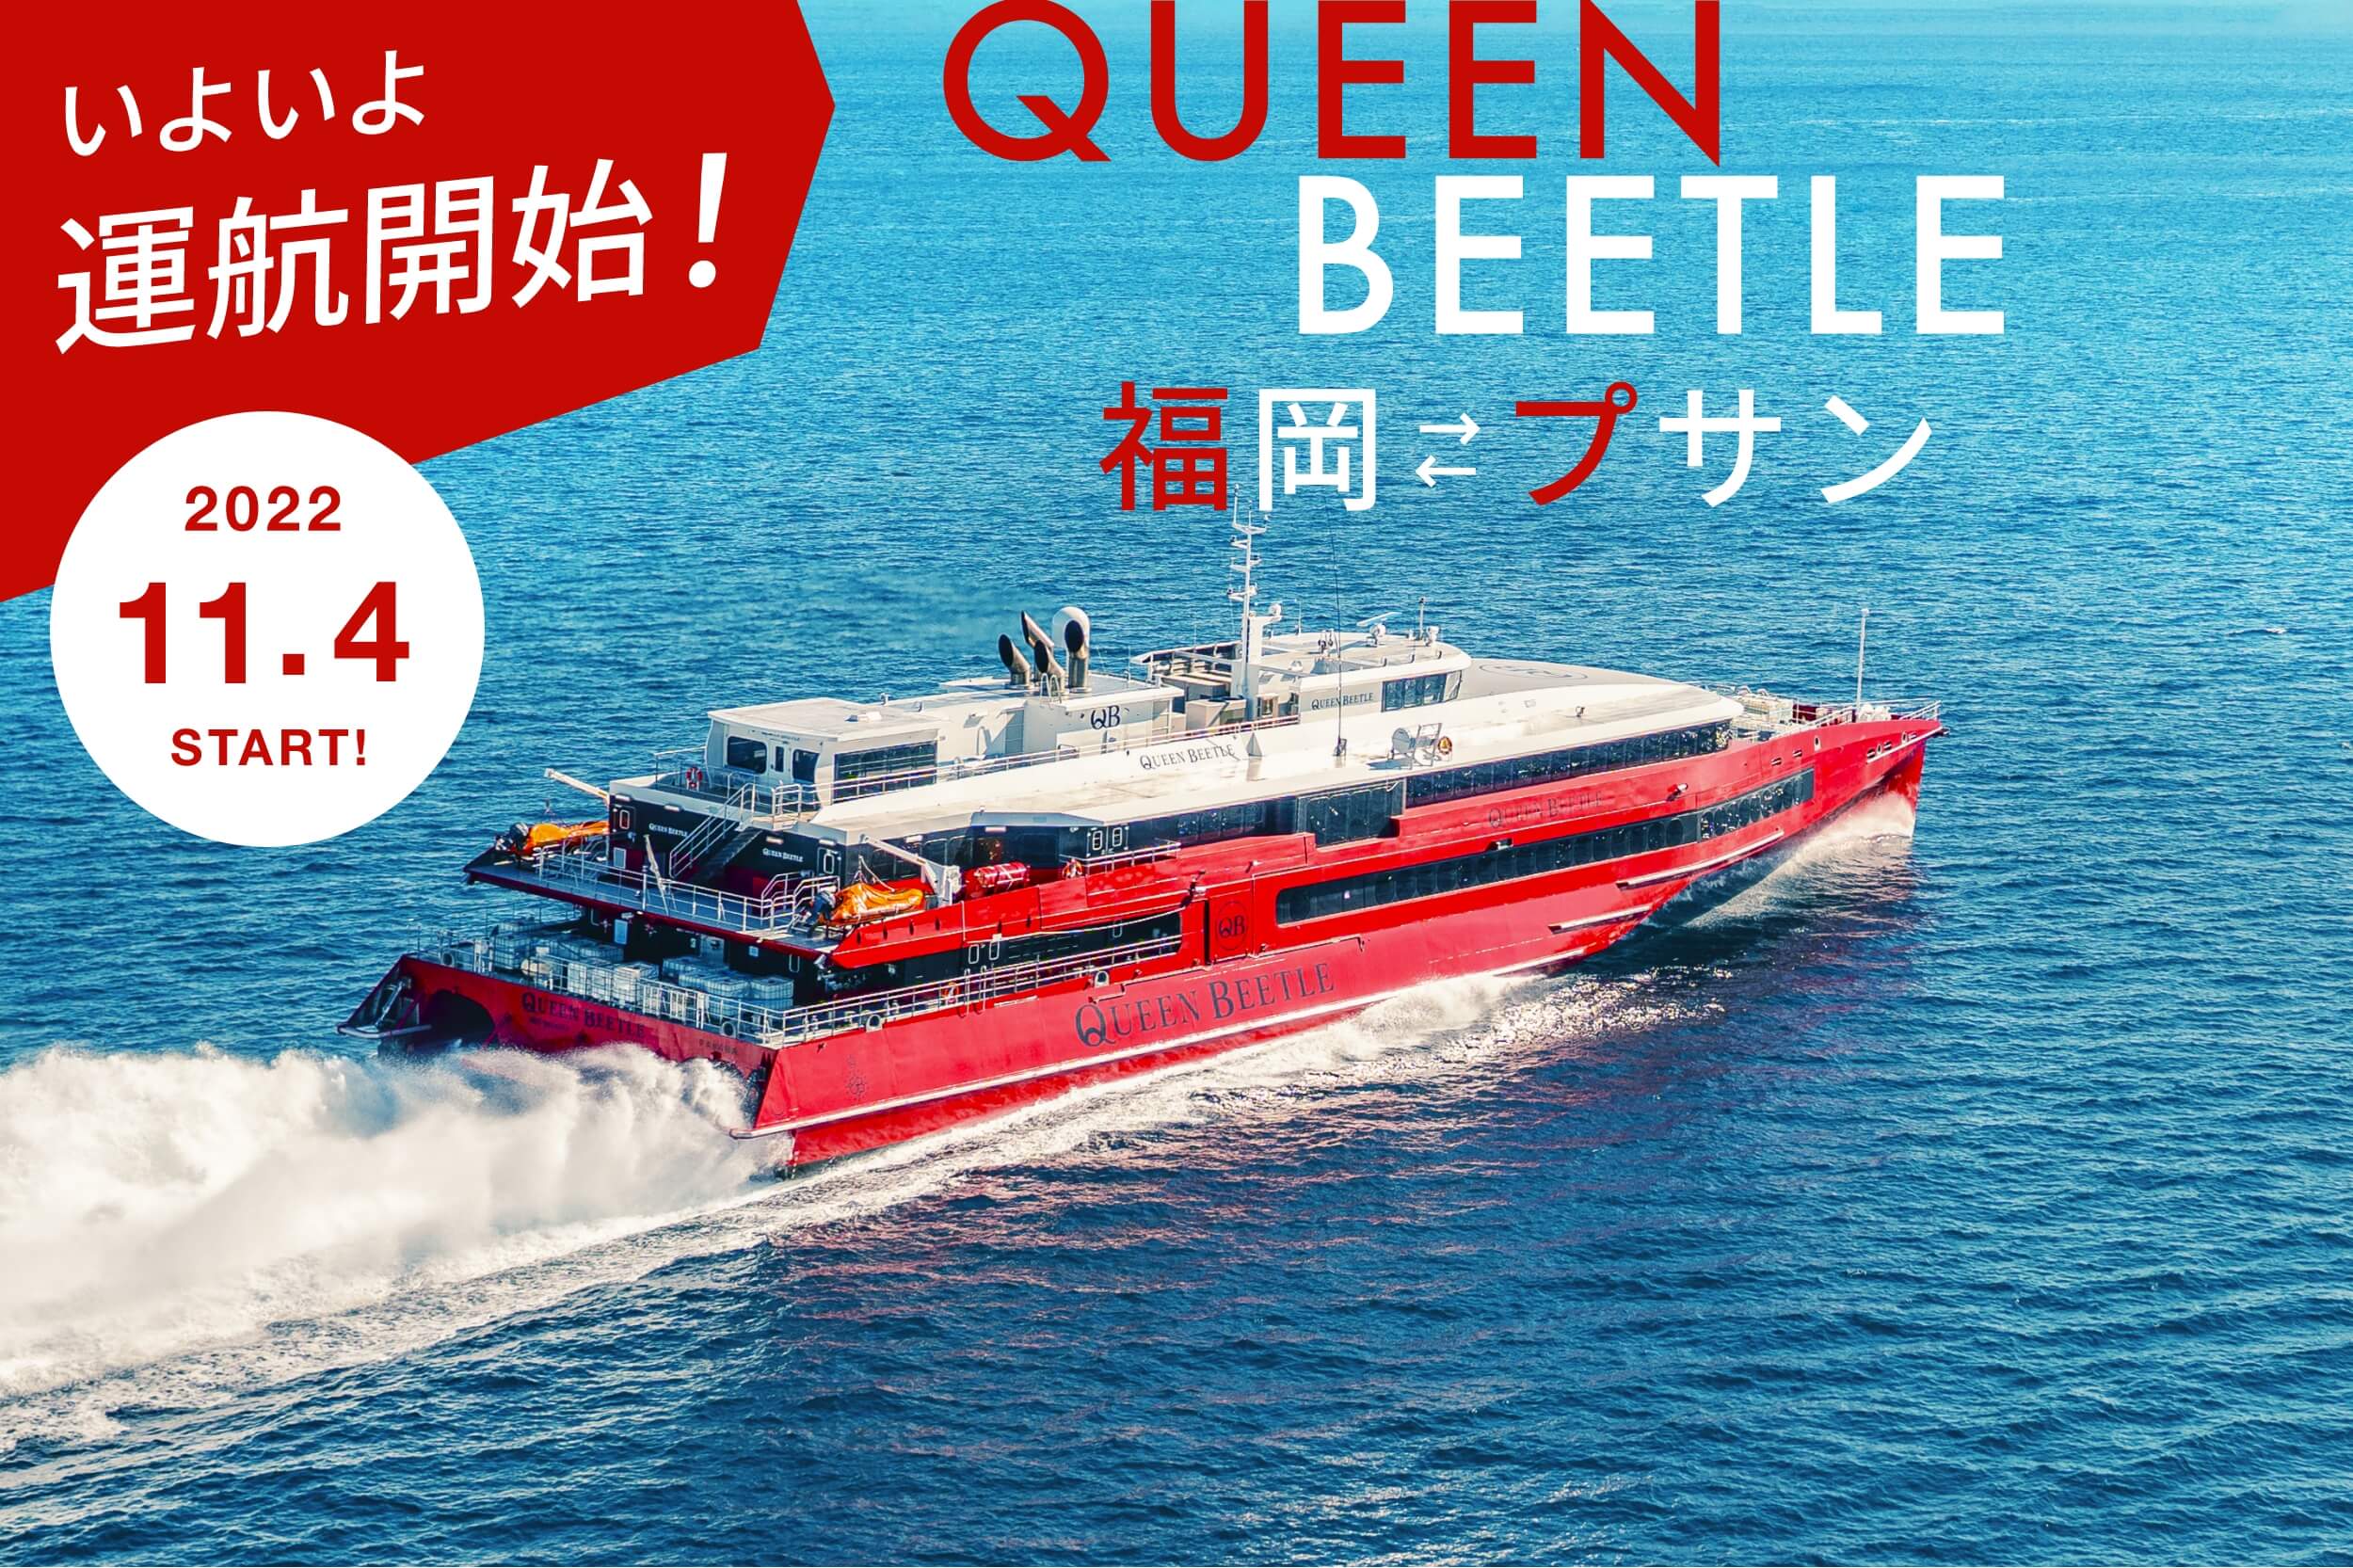 福岡から韓国 釜山 に行くならクイーンビートル Queen Beetle Jr九州高速船